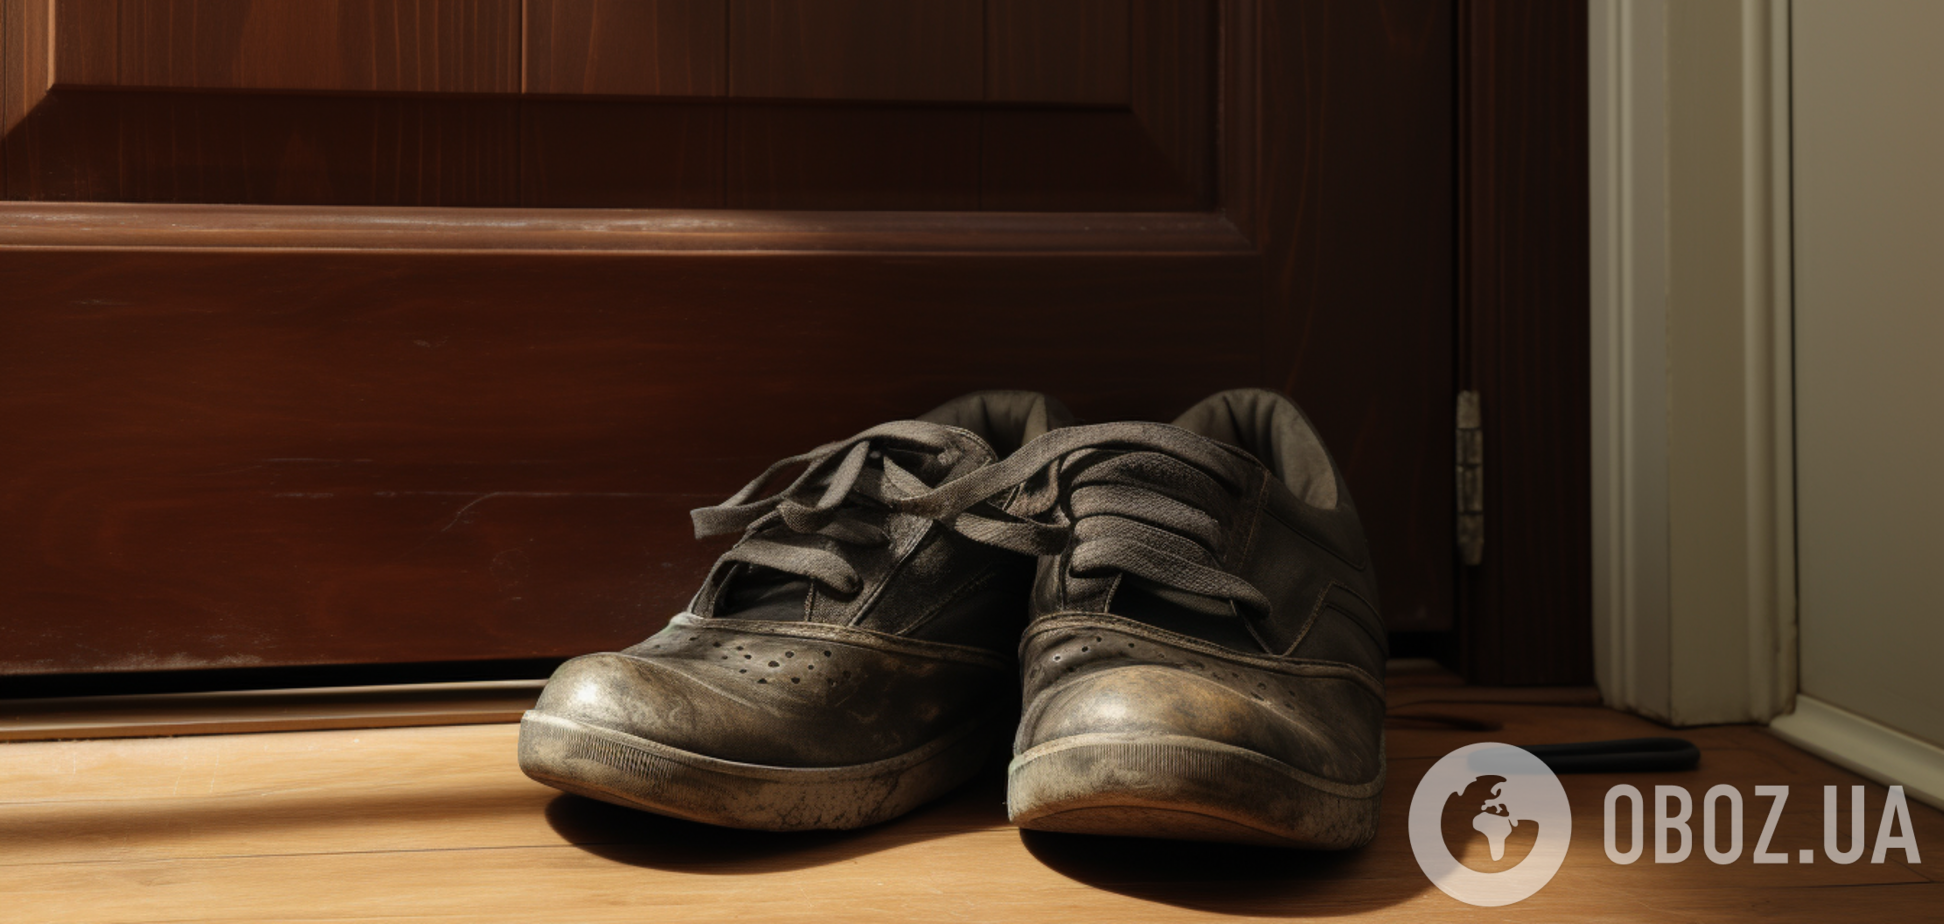 Як позбутися вологи і неприємного запаху у взутті: ефективні домашні способи